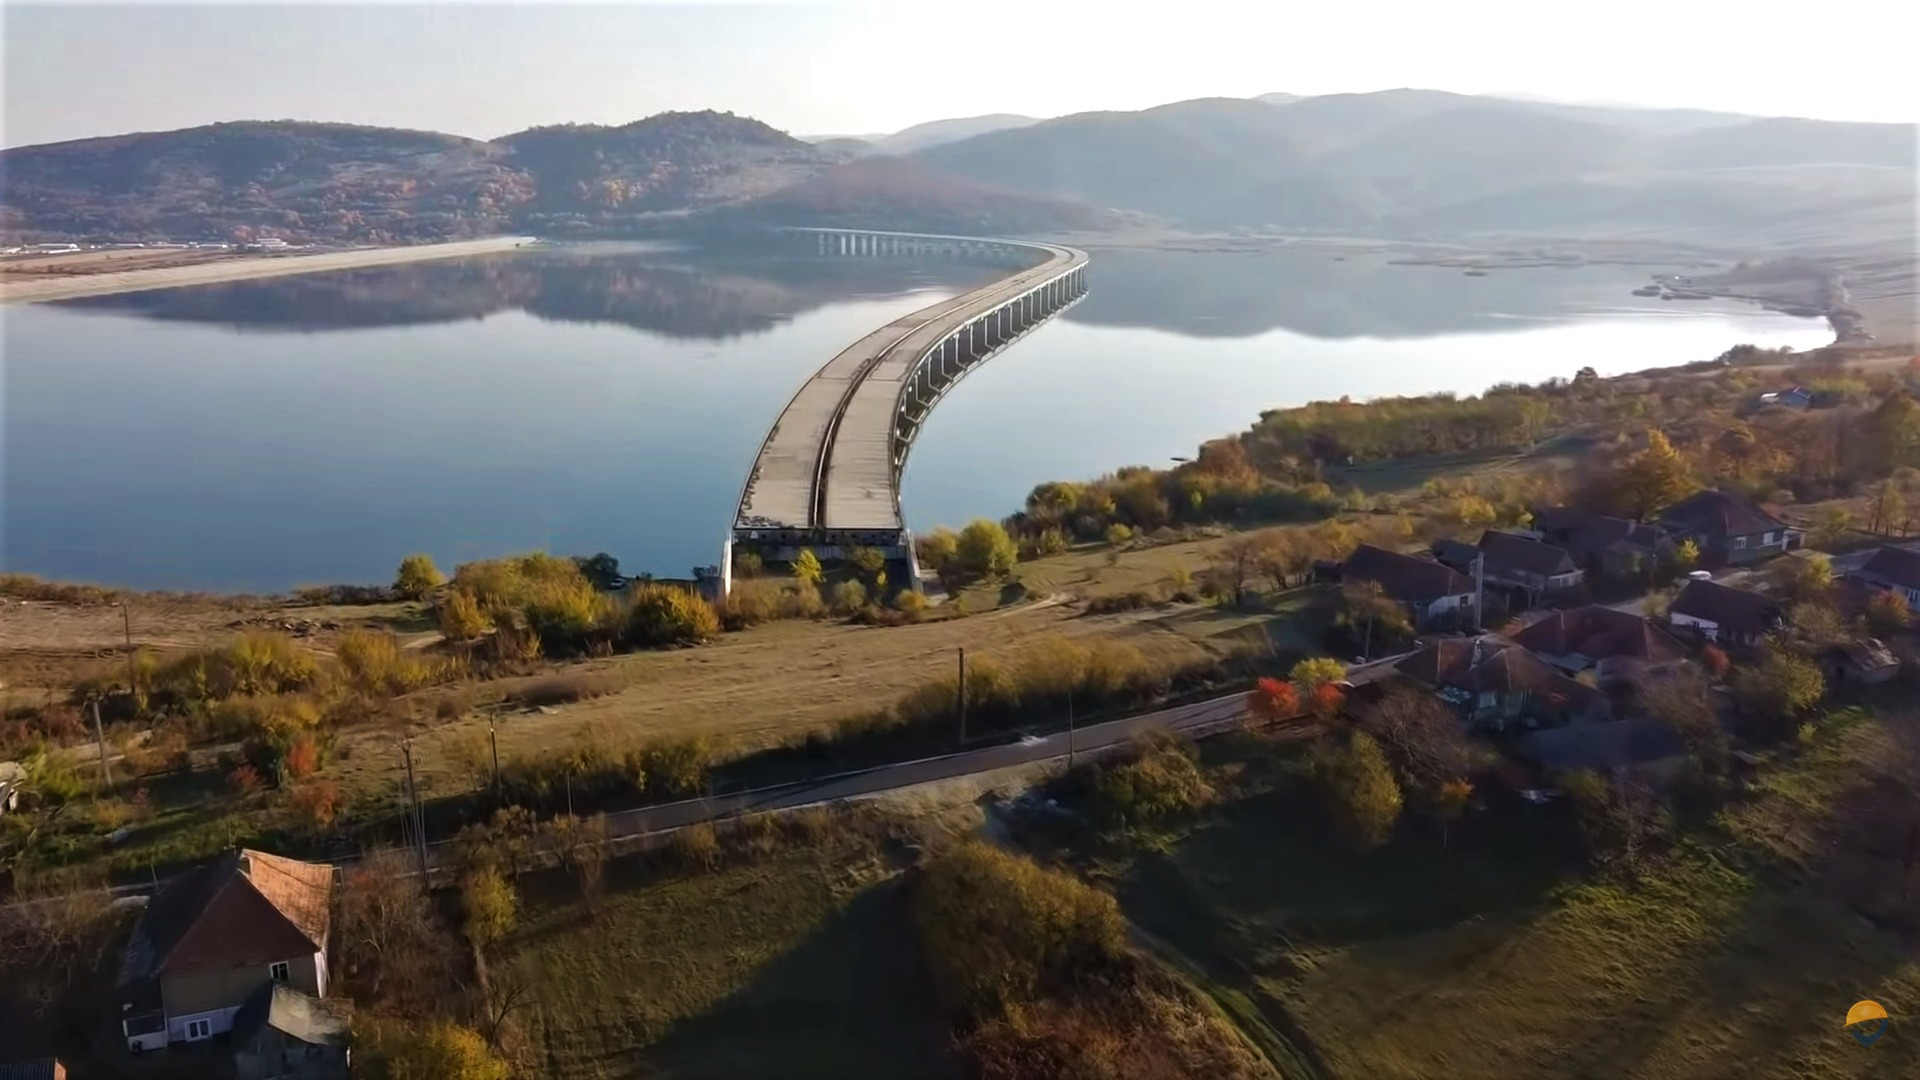 CNAIR a deblocat licitația pentru lotul Autostrăzii A3 Transilvania cu viaductul construit de Bechtel. FOTO: Facebook/ Asociația Pro Infrastructură